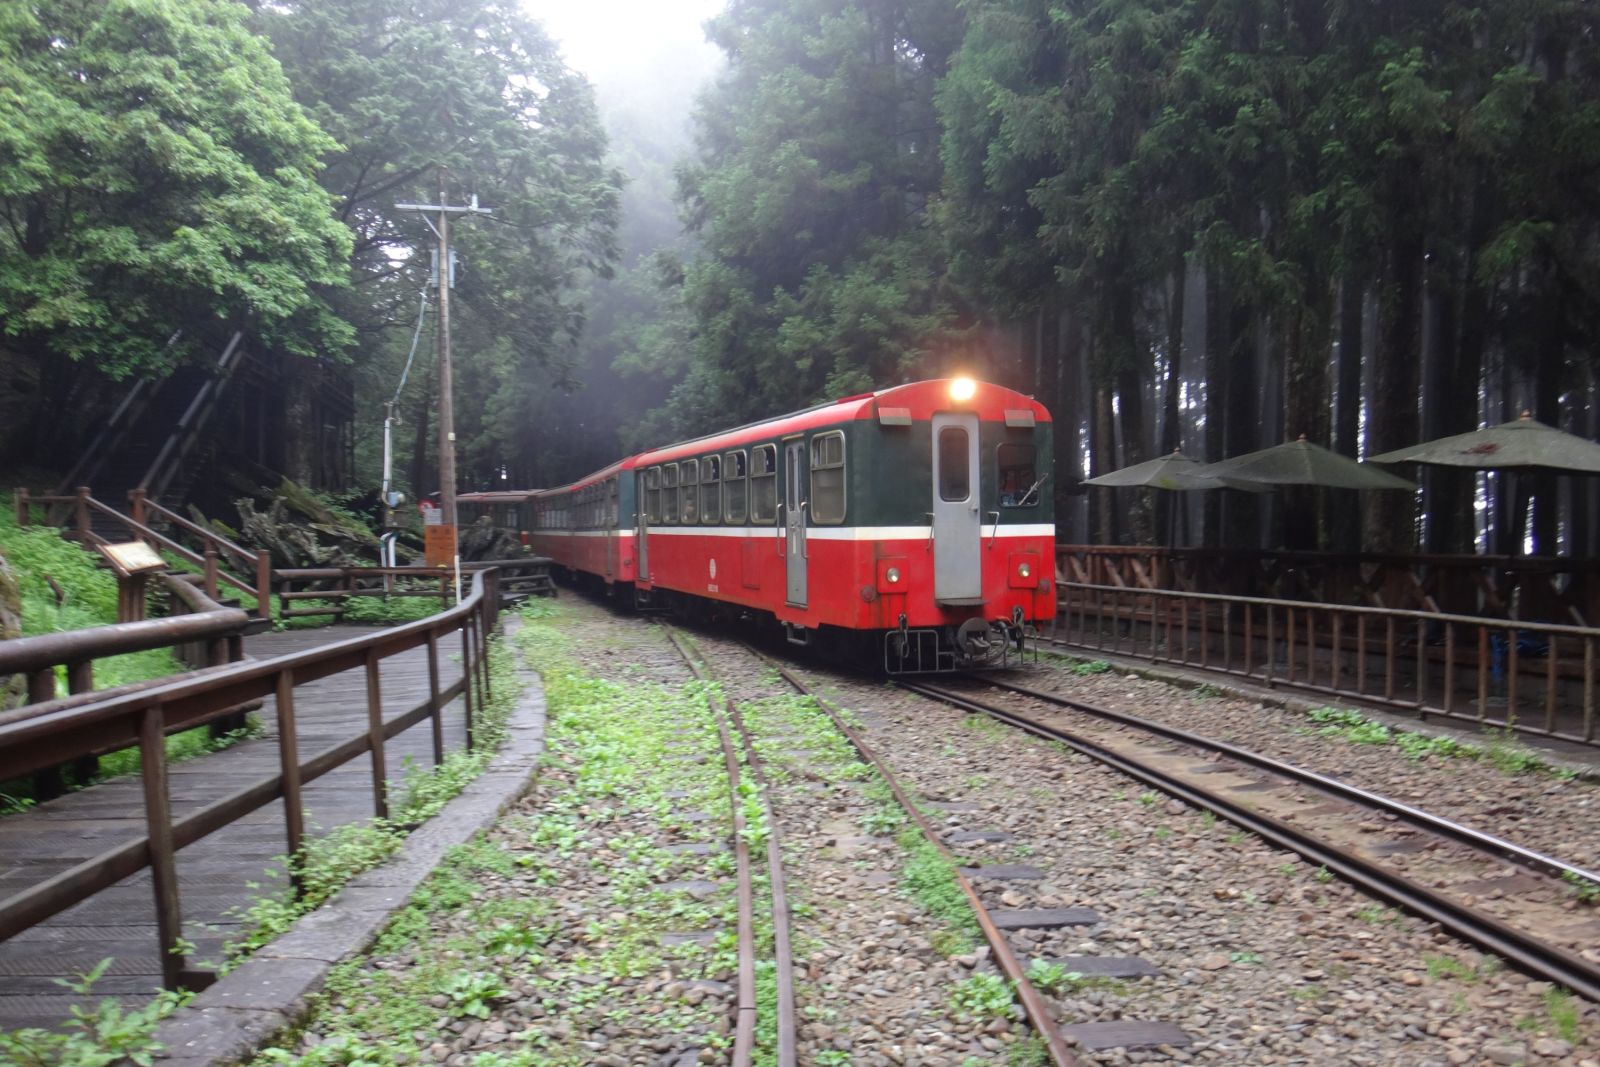 Die alte Schmalspurbahn war ursprünglich dazu gedacht, die Edelhölzer ins Tal hinunter zu transportieren. Heute bringt sie Touristen den Berg hinauf.